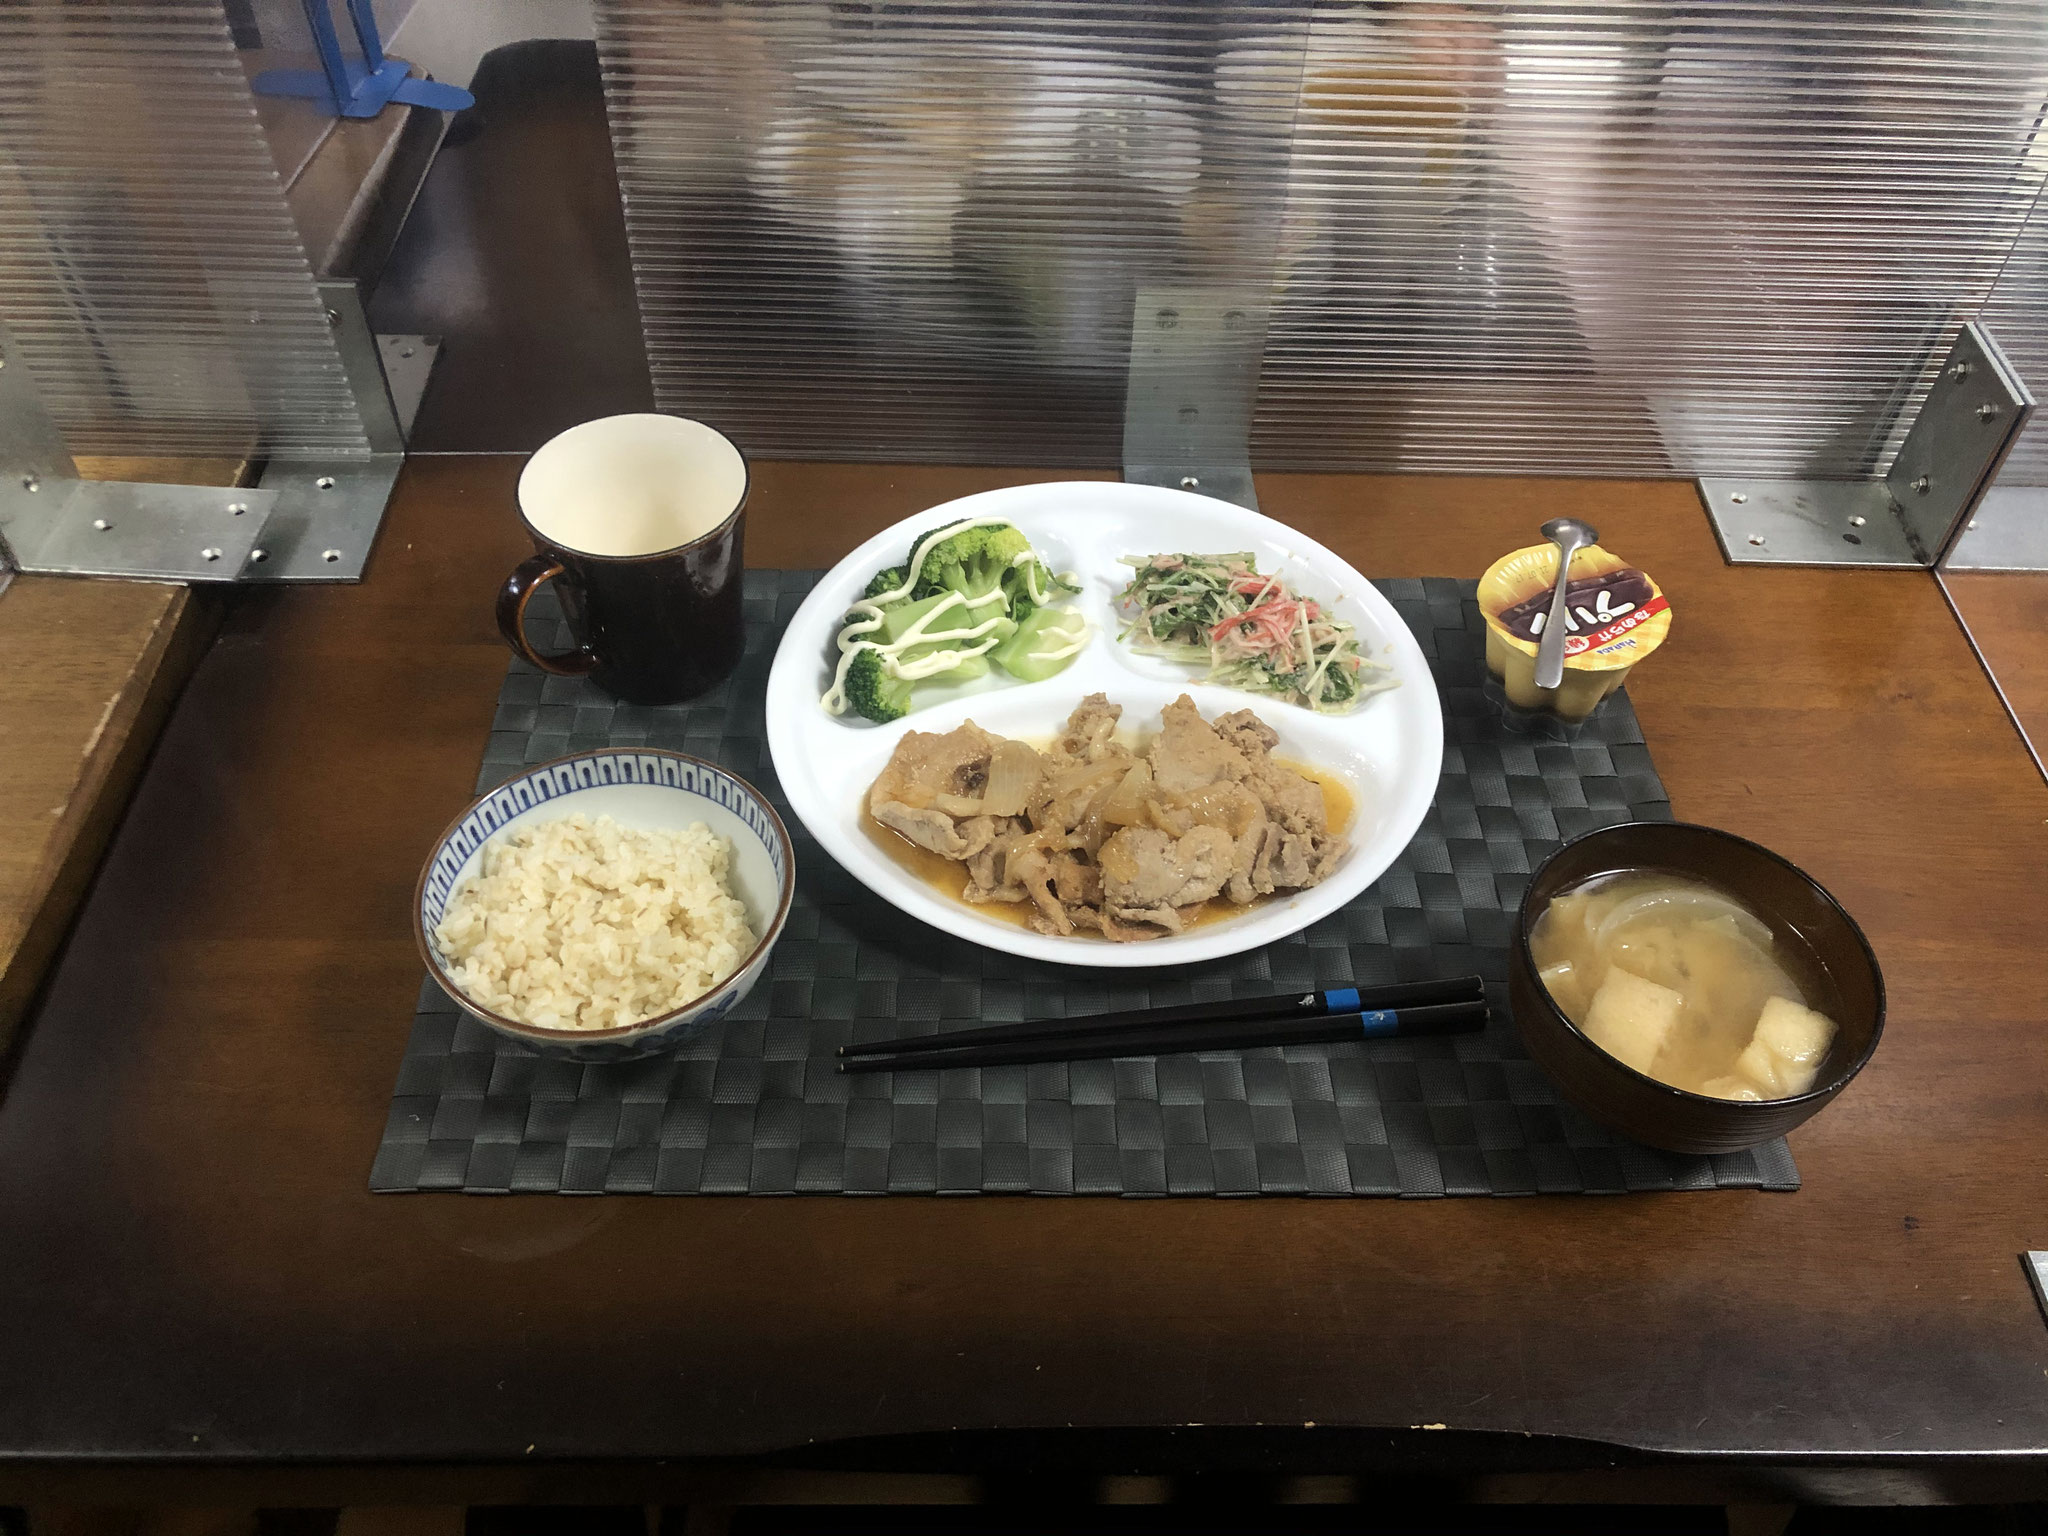 7月4日日曜日、Ohana夕食「生姜焼き、水菜サラダ、茹でブロッコリー、みそ汁、プリン」